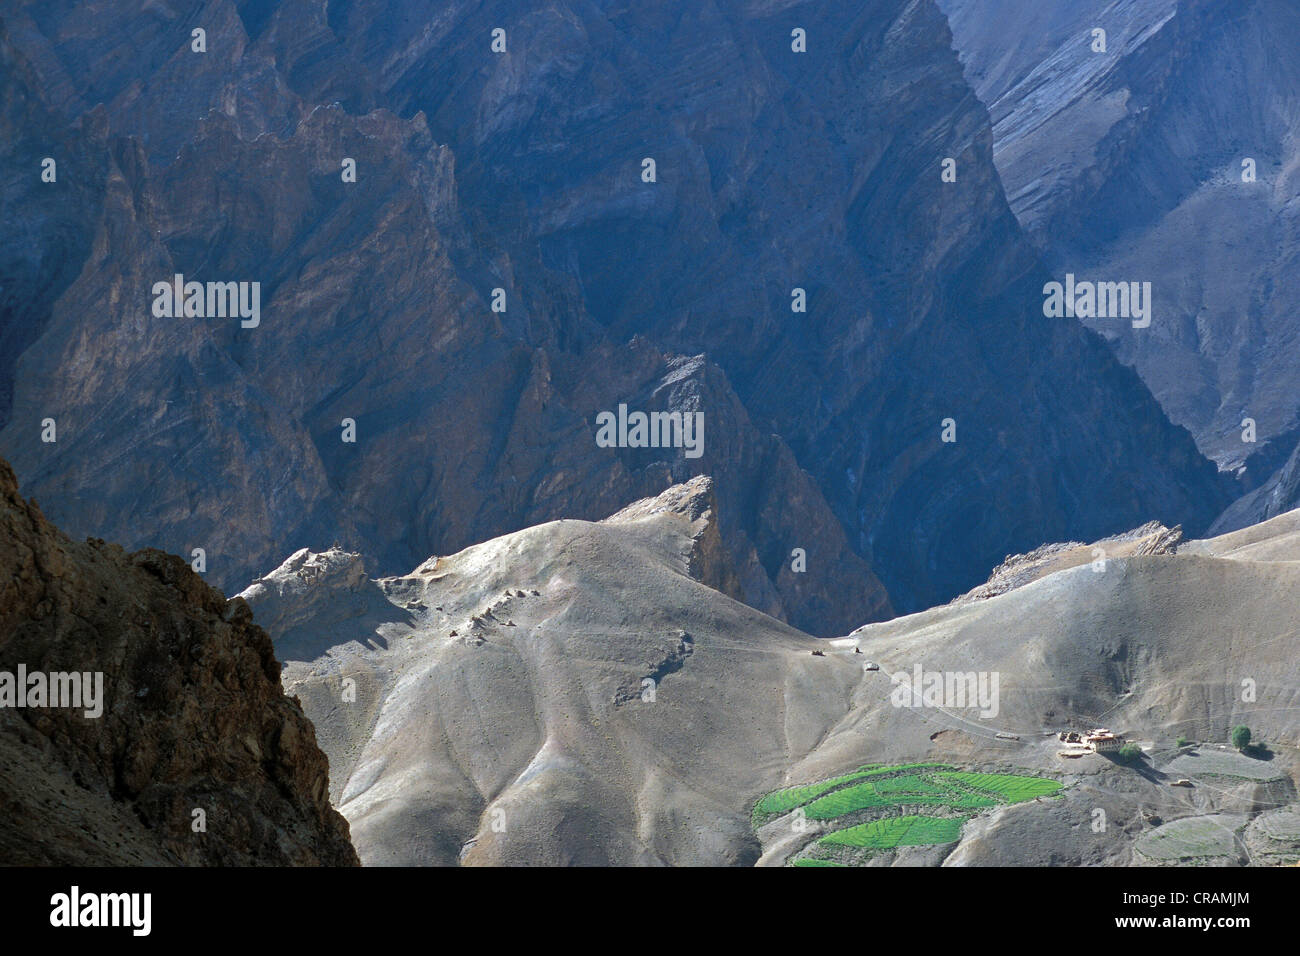 Ferme isolée avec un champ près de Lingshed, Zanskar, Ladakh, Himalaya indien, le Jammu-et-Cachemire, l'Inde du nord, Inde, Asie Banque D'Images